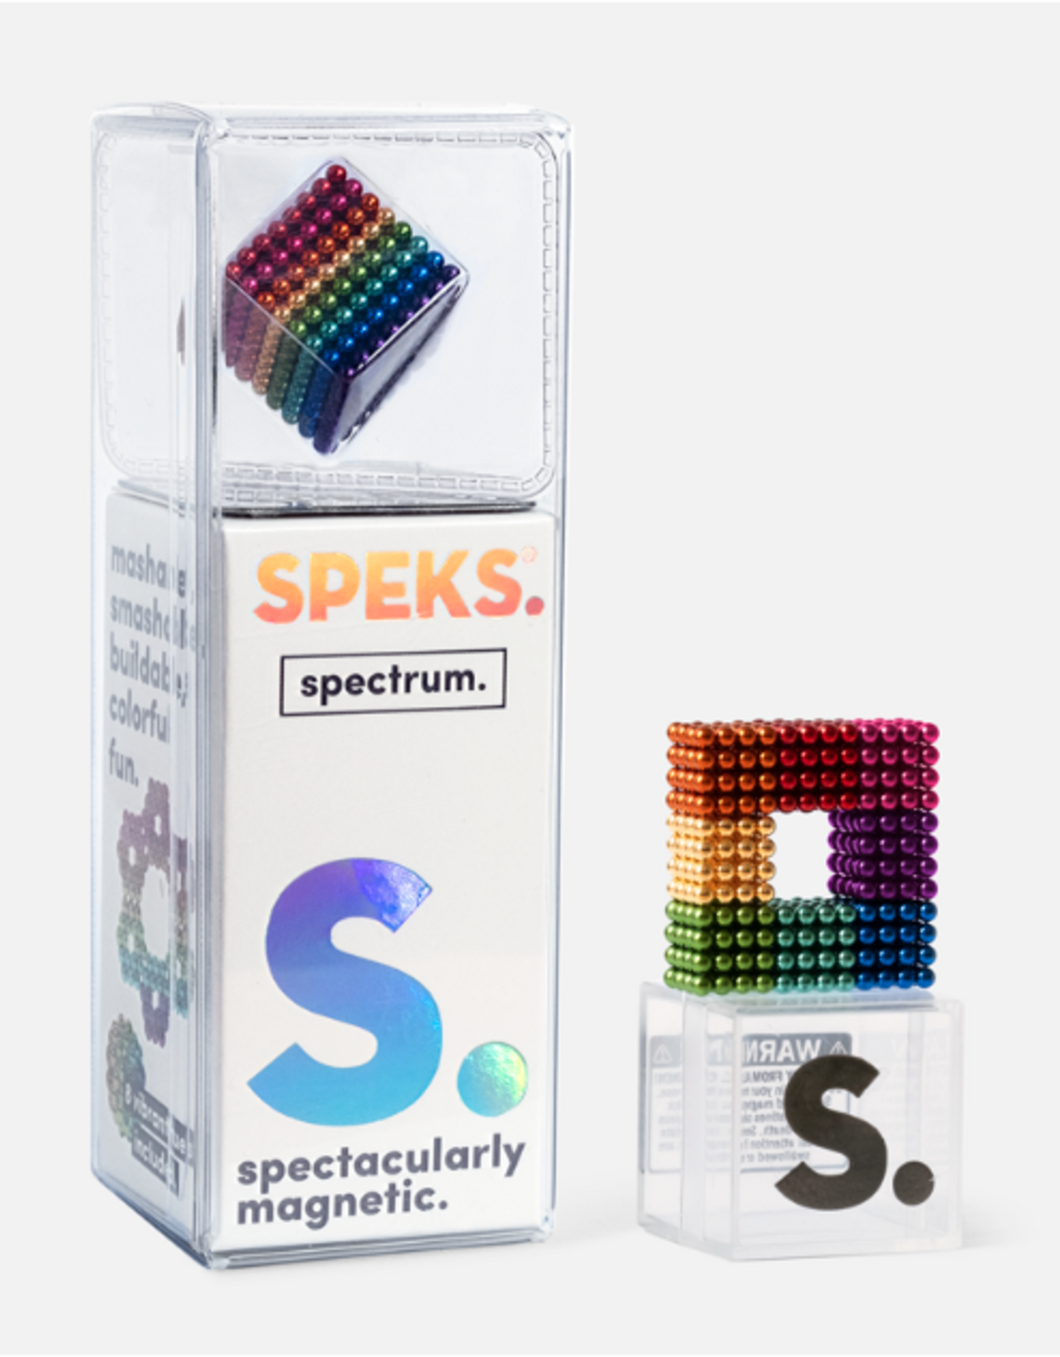 Spectrum Speks